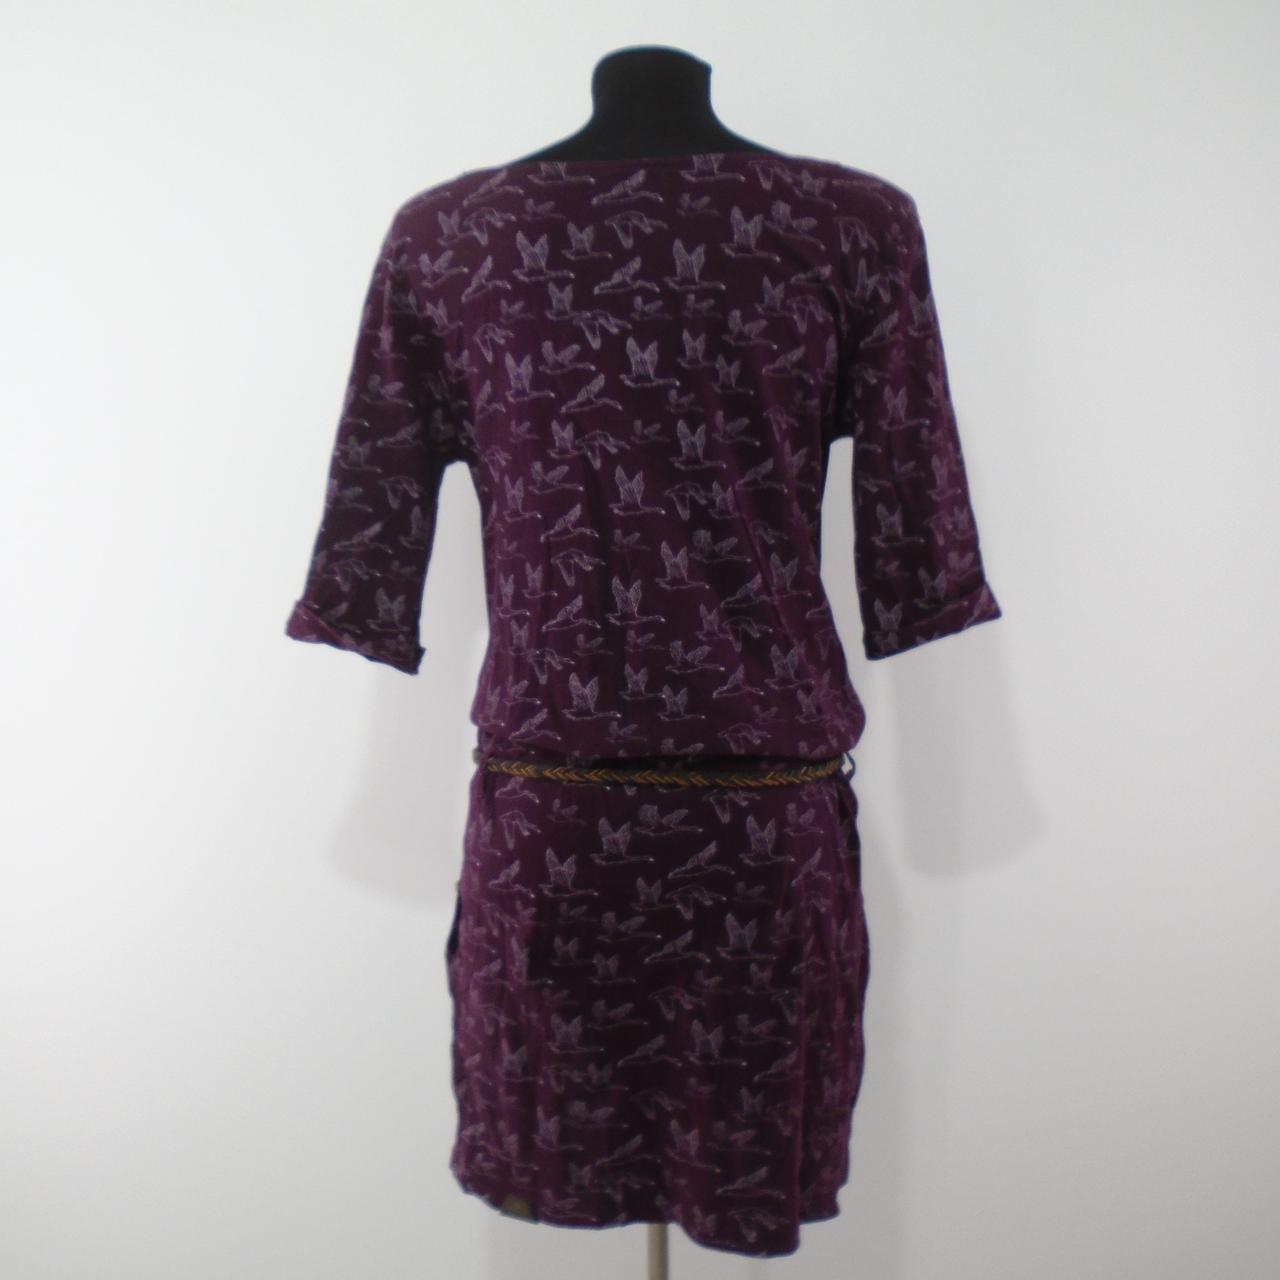 Women's Dress Ragwear. Bordeaux. M. Used. Very good